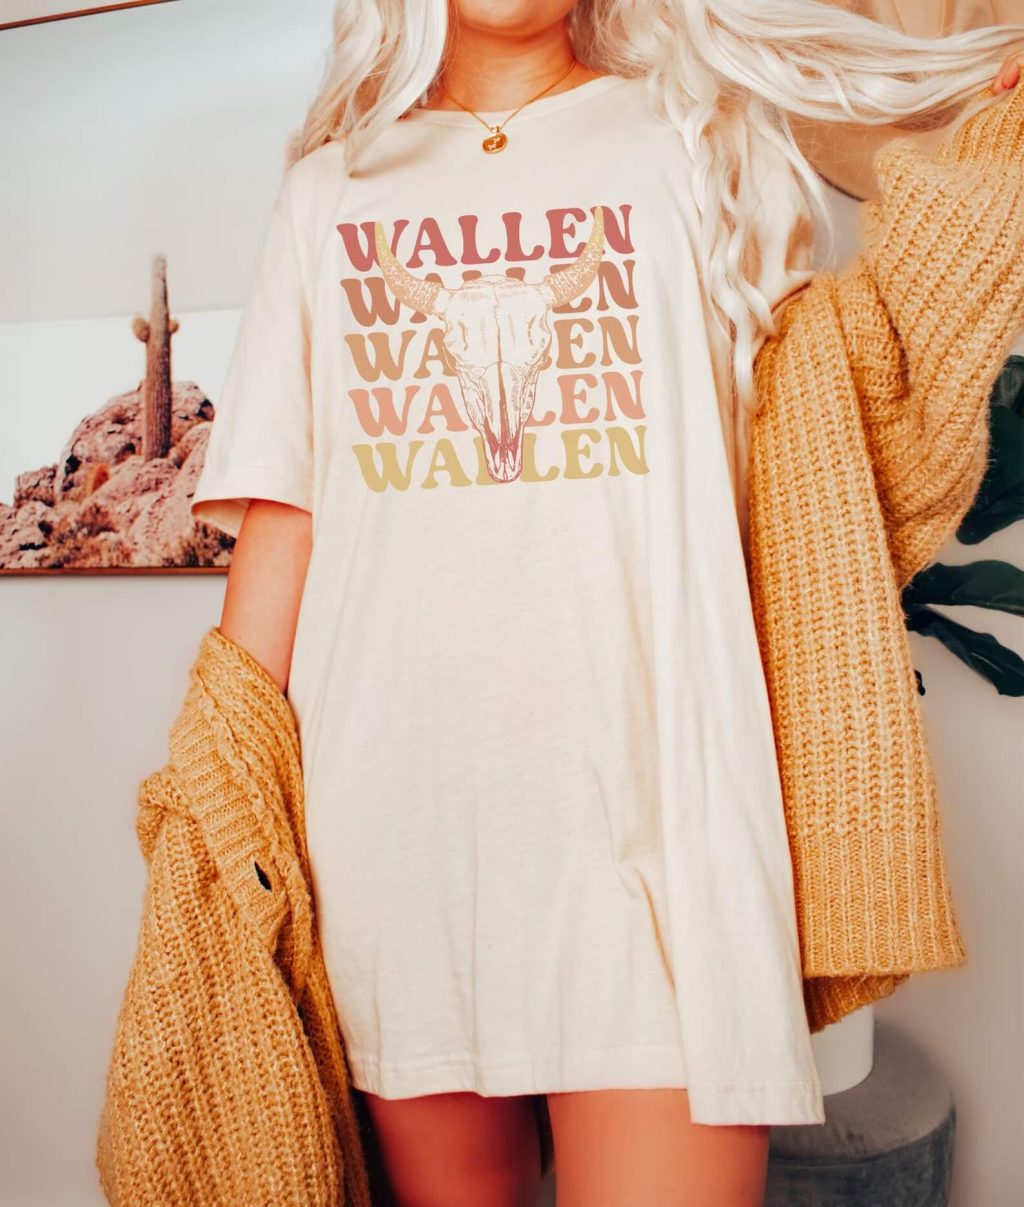 cowboy wallen t shirt 2 - Morgan Wallen Store